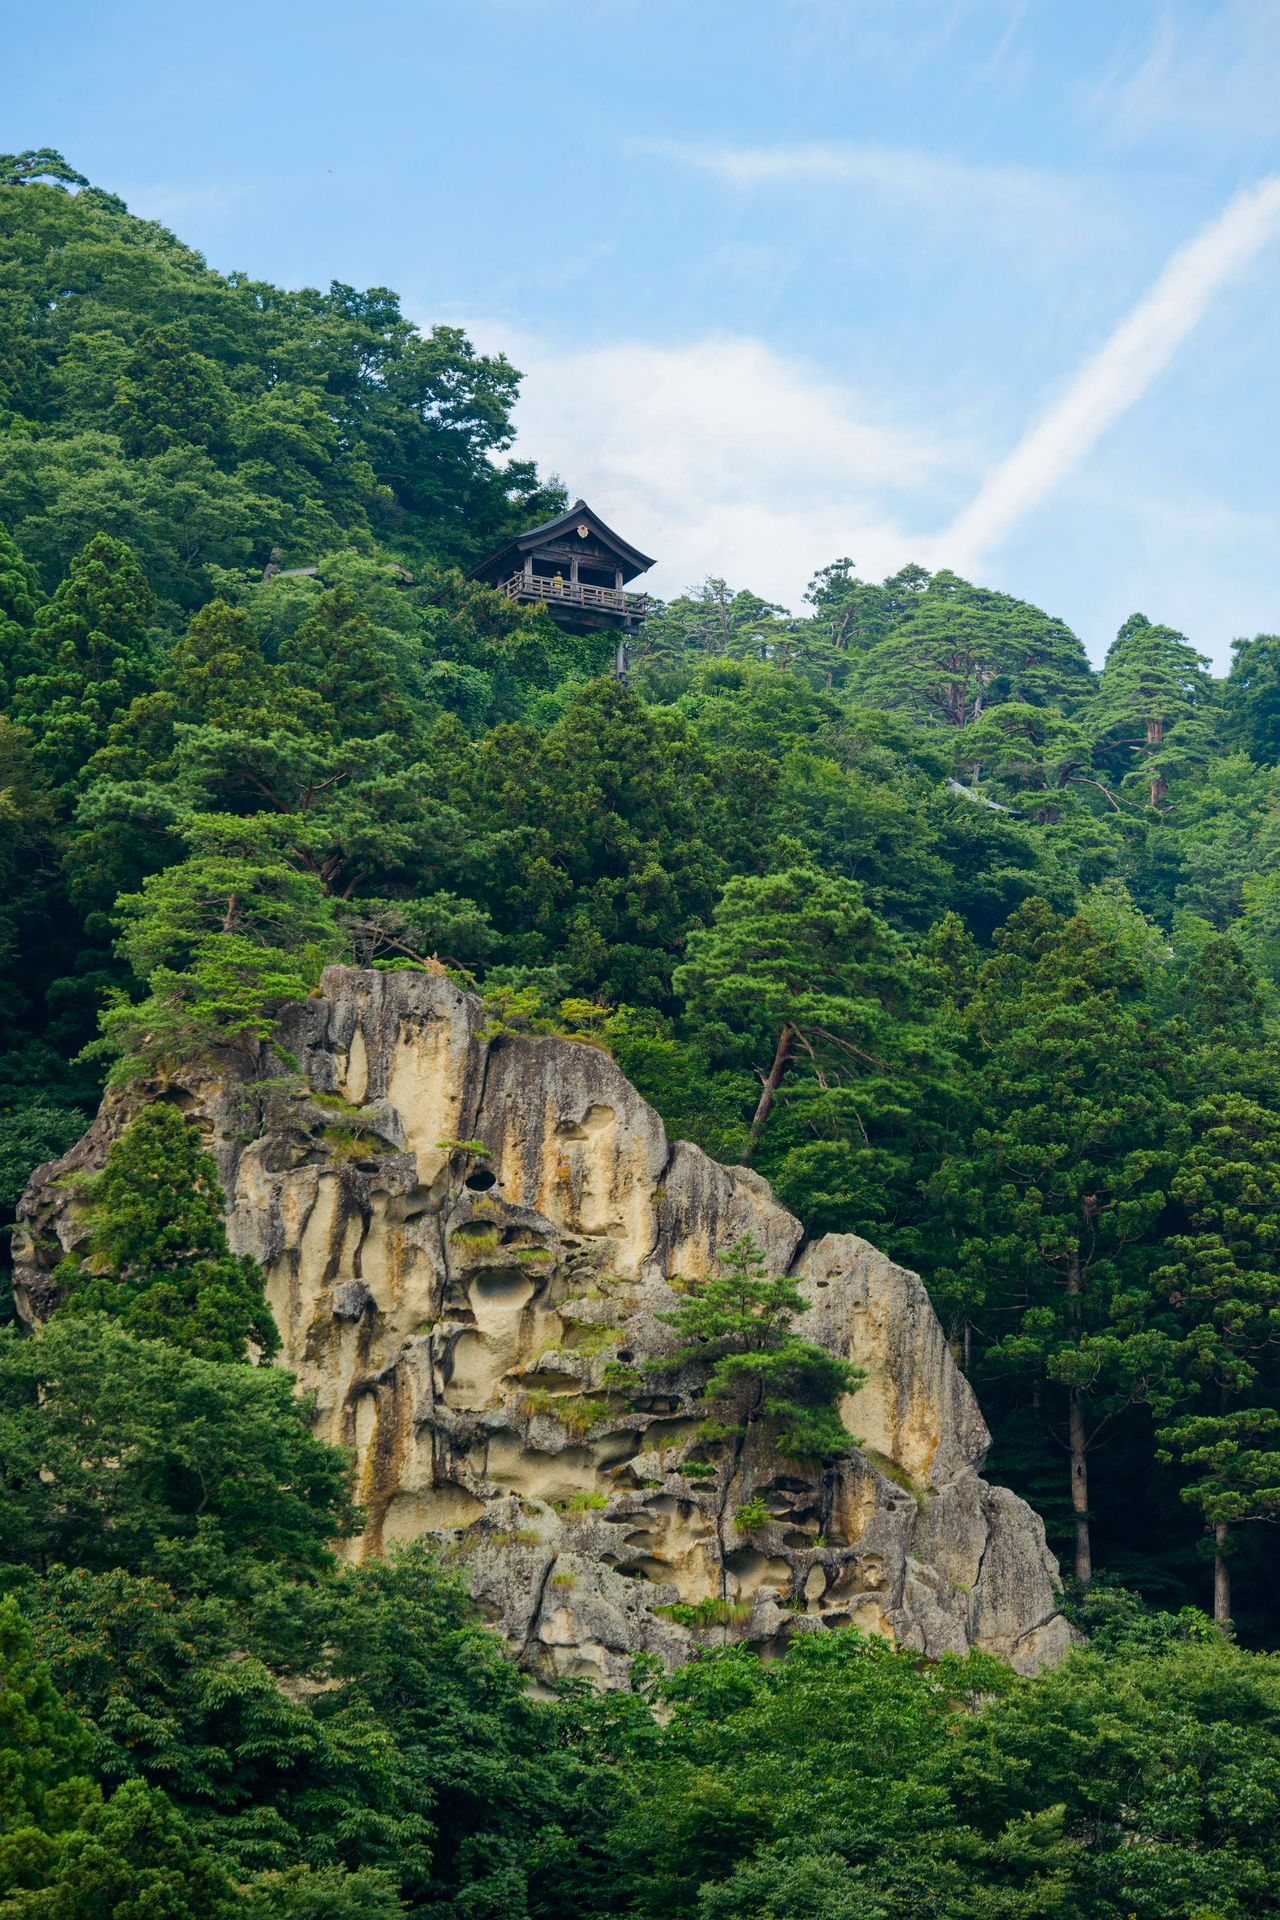 Al pabellón Tainai-dō, situado en un barranco, solo pueden acceder las personas ascetas (imagen cortesía de la Asociación de Turismo de Yamagata).